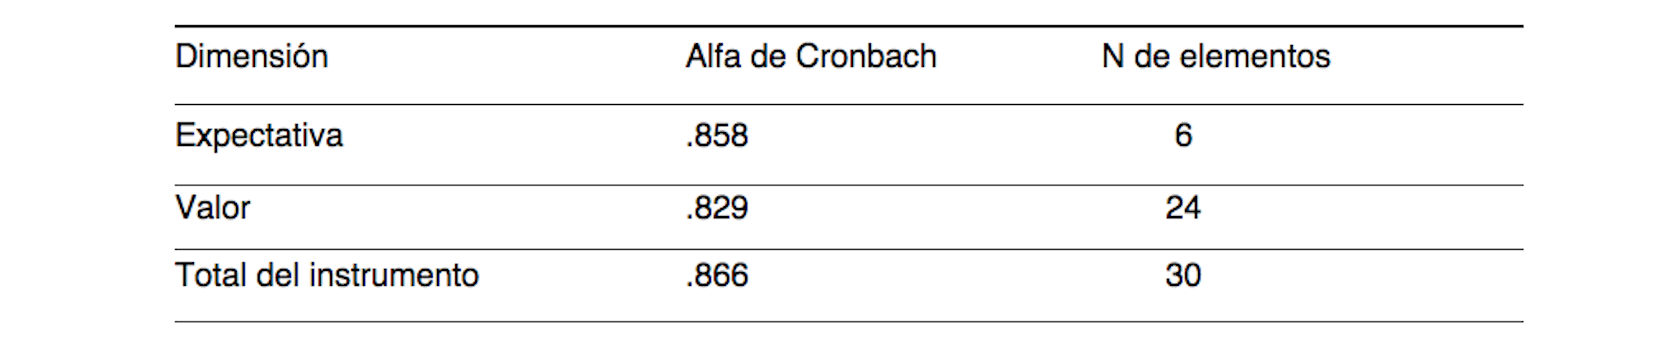 
Resultados obtenidos del análisis de consistencia interna Alfa de Cronbach.